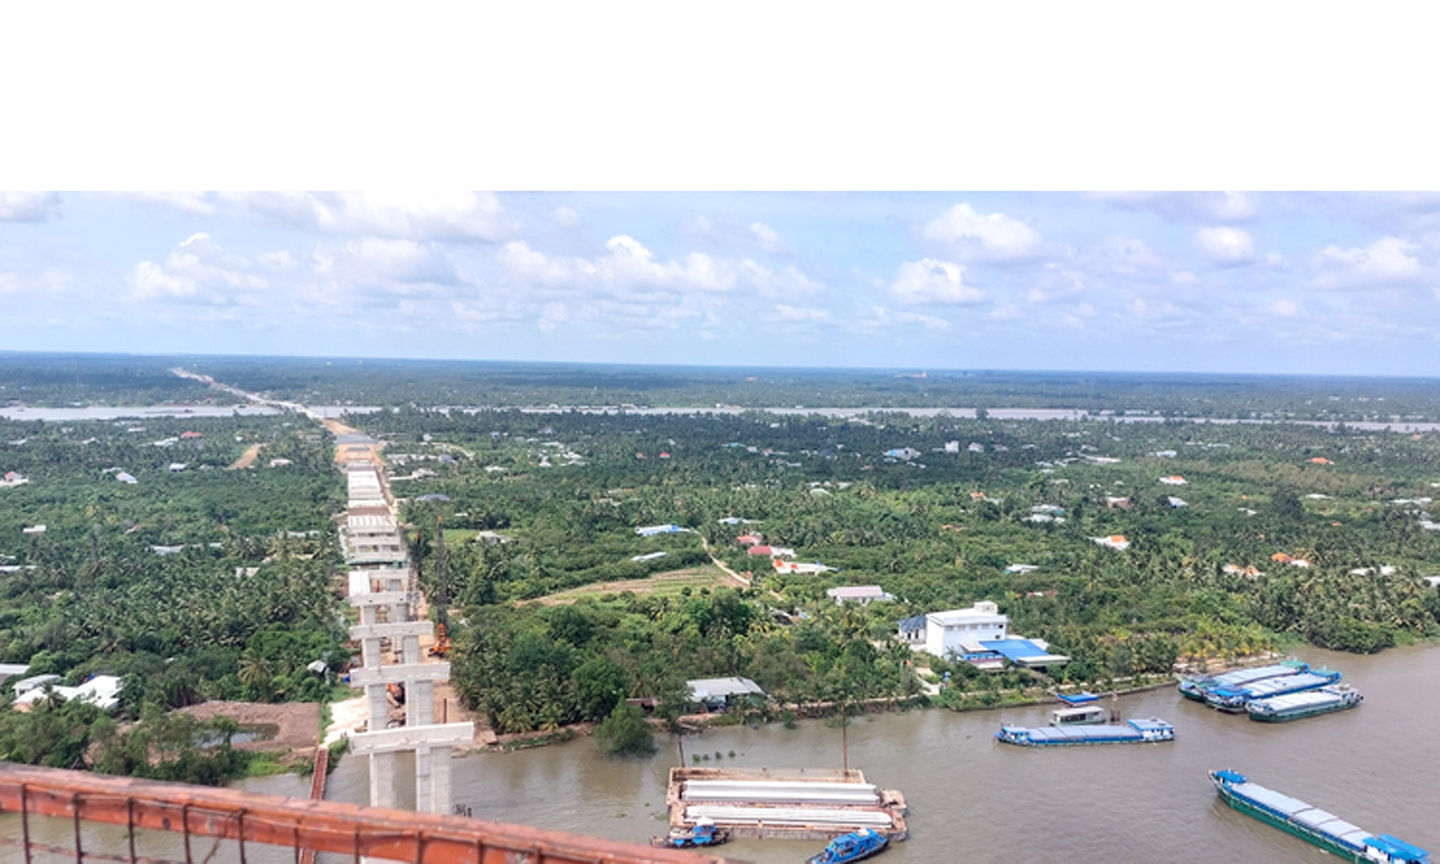 Nhìn từ trên cao, Dự án xây dựng cầu Rạch Miễu 2 đã nối dài một mạch từ tỉnh Tiền Giang đến tỉnh Bến Tre - Ảnh: VGP/Nhật Thy